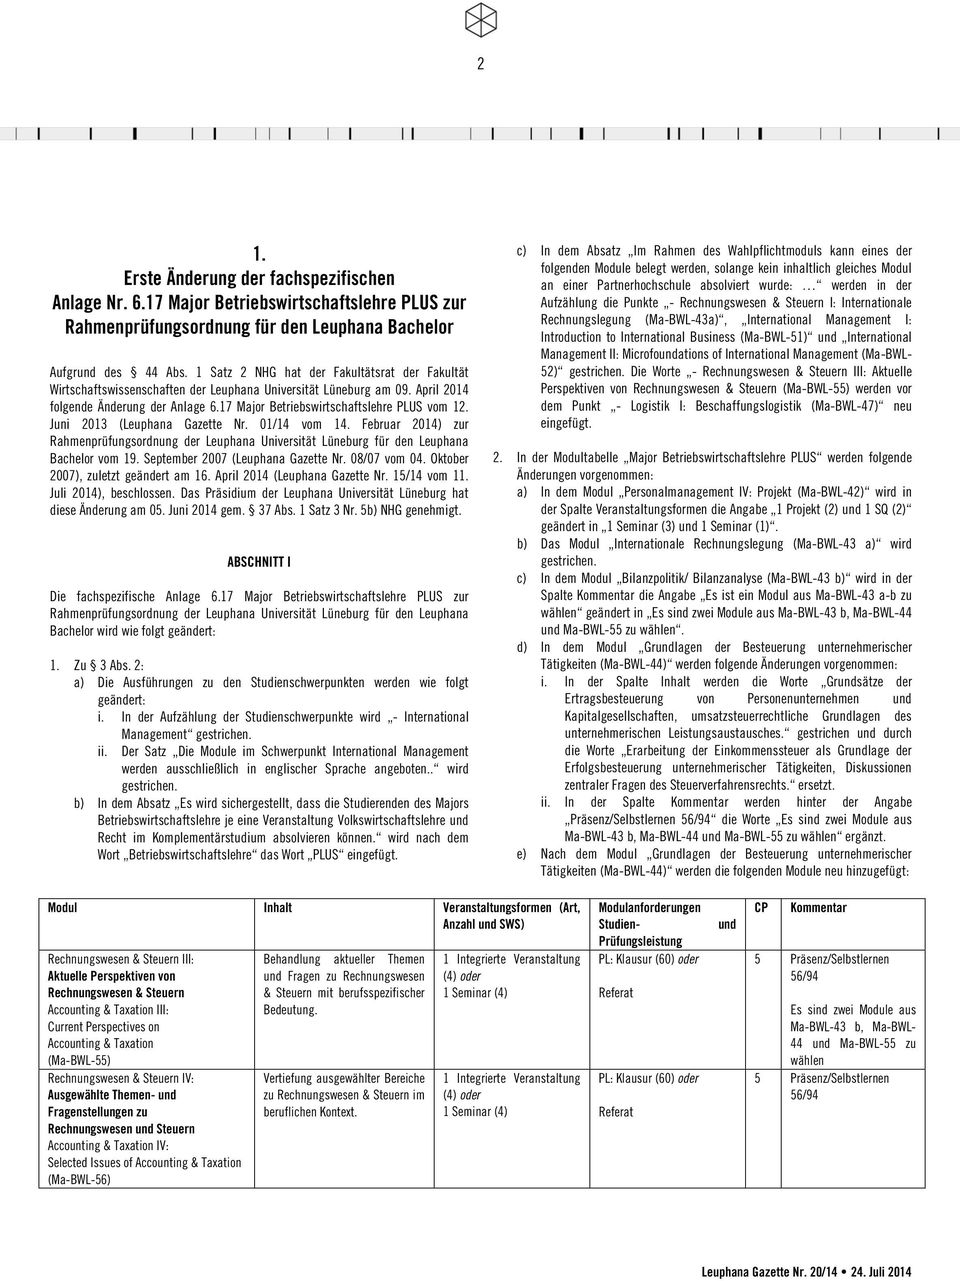 17 Major Betriebswirtschaftslehre PLUS vom 12. Juni 2013 (Leuphana Gazette Nr. 01/14 vom 14. Februar 2014) zur Rahmenprüfungsordnung der Leuphana Universität Lüneburg für den Leuphana Bachelor vom 19.